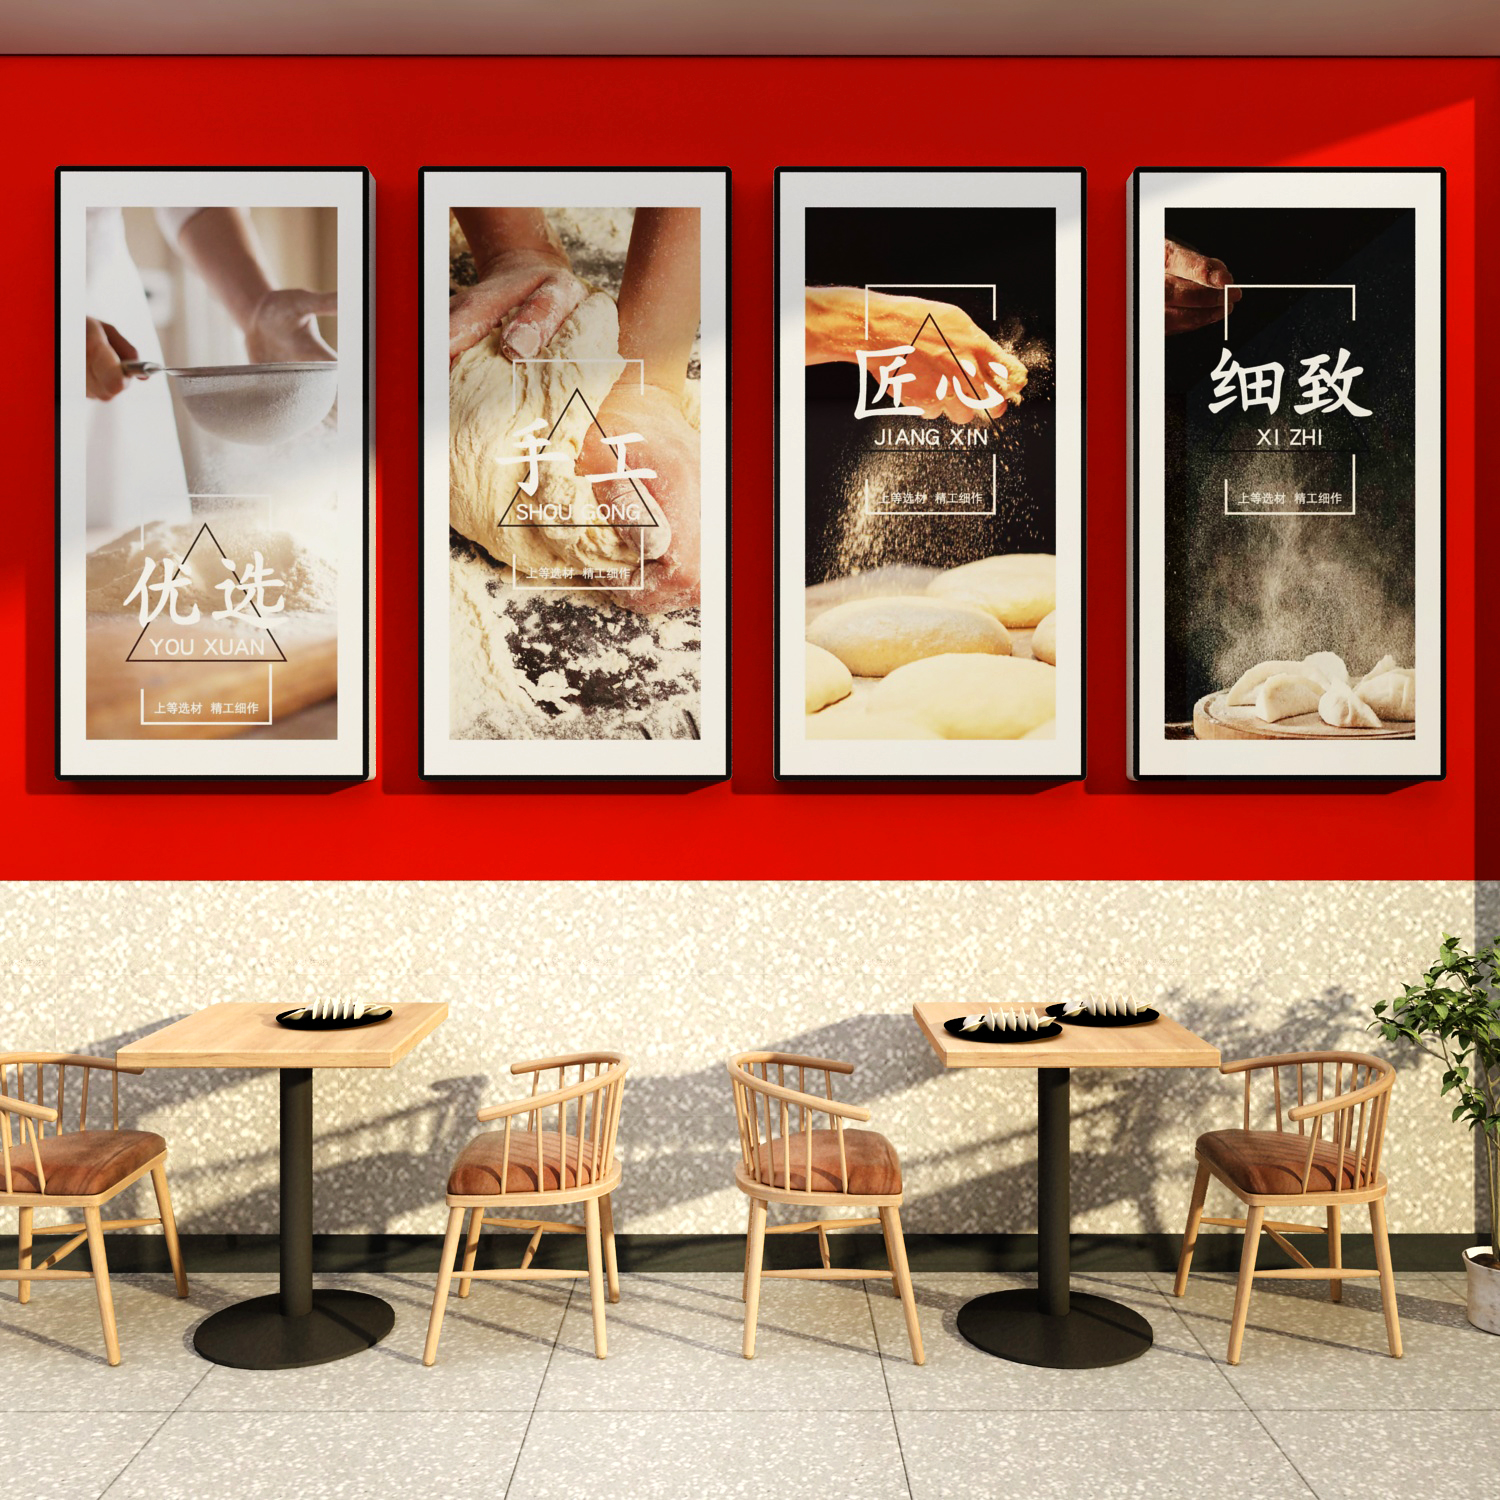 水饺店墙面装修饰画手工饺子馆早餐包子铺贴纸广告海报创意背景 - 图3